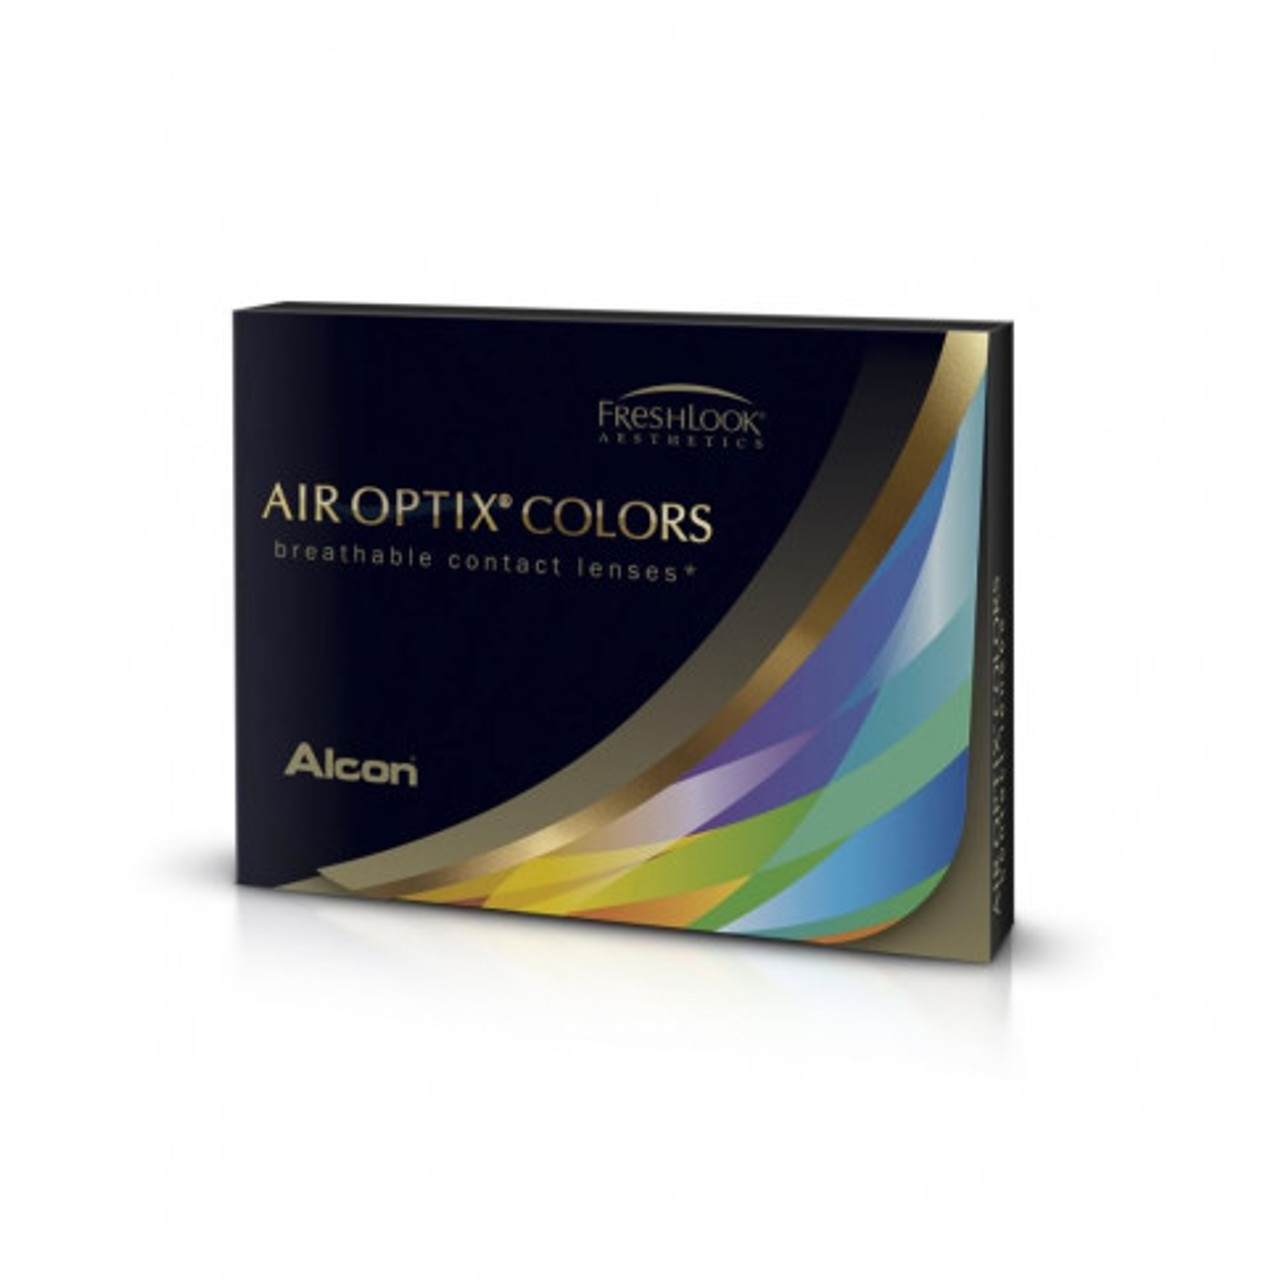 air optix colors price